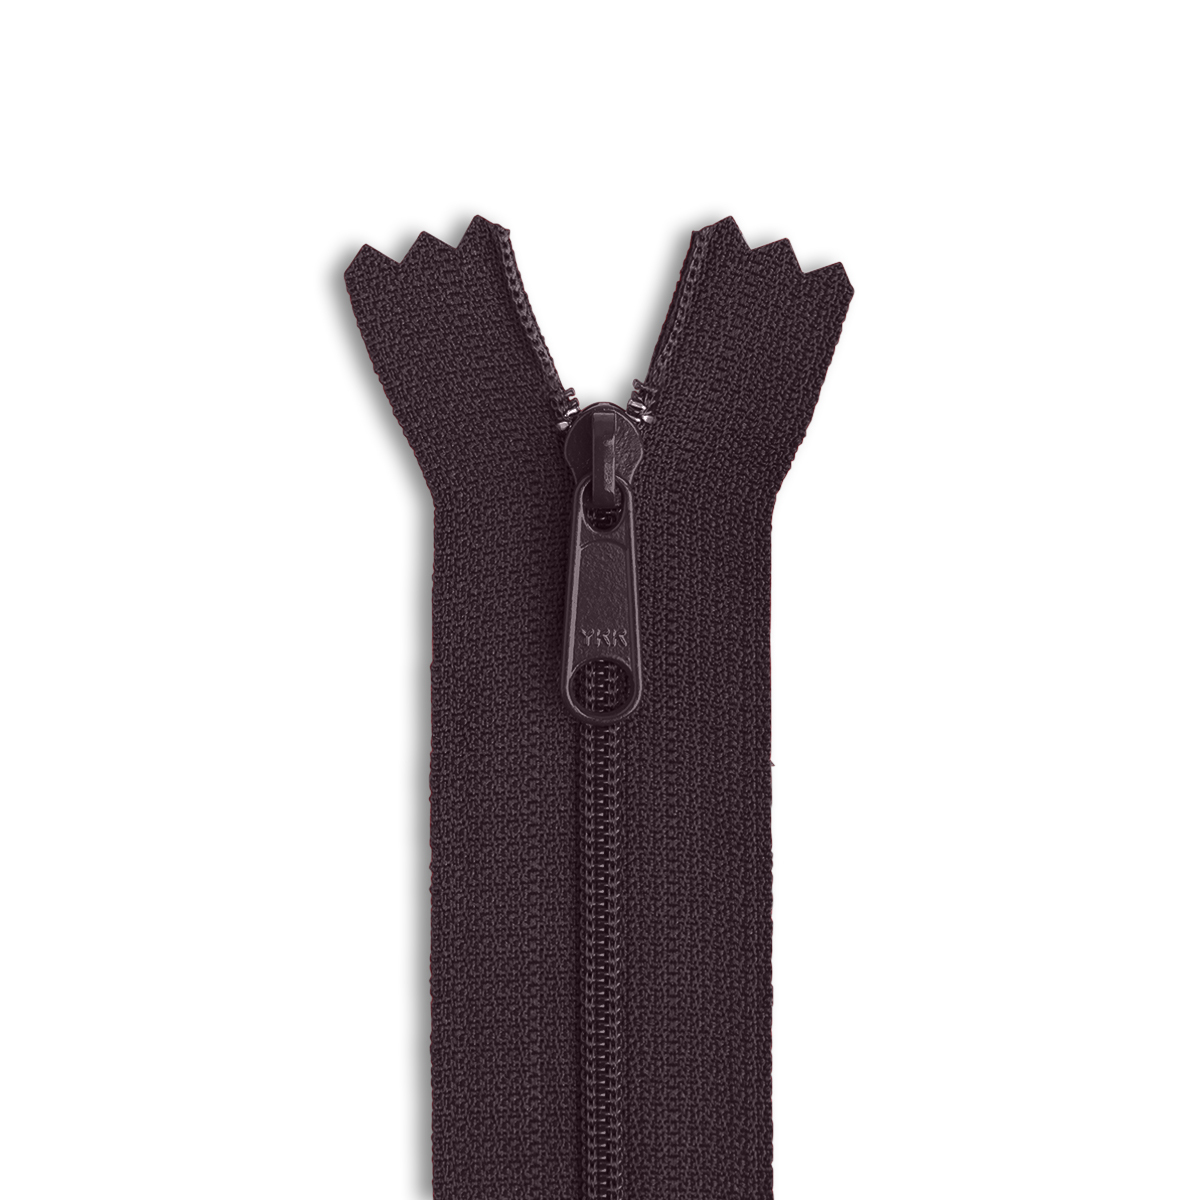 YKK #4.5 12 Nylon Coil Long Pull Bag Zipper - Black (580)